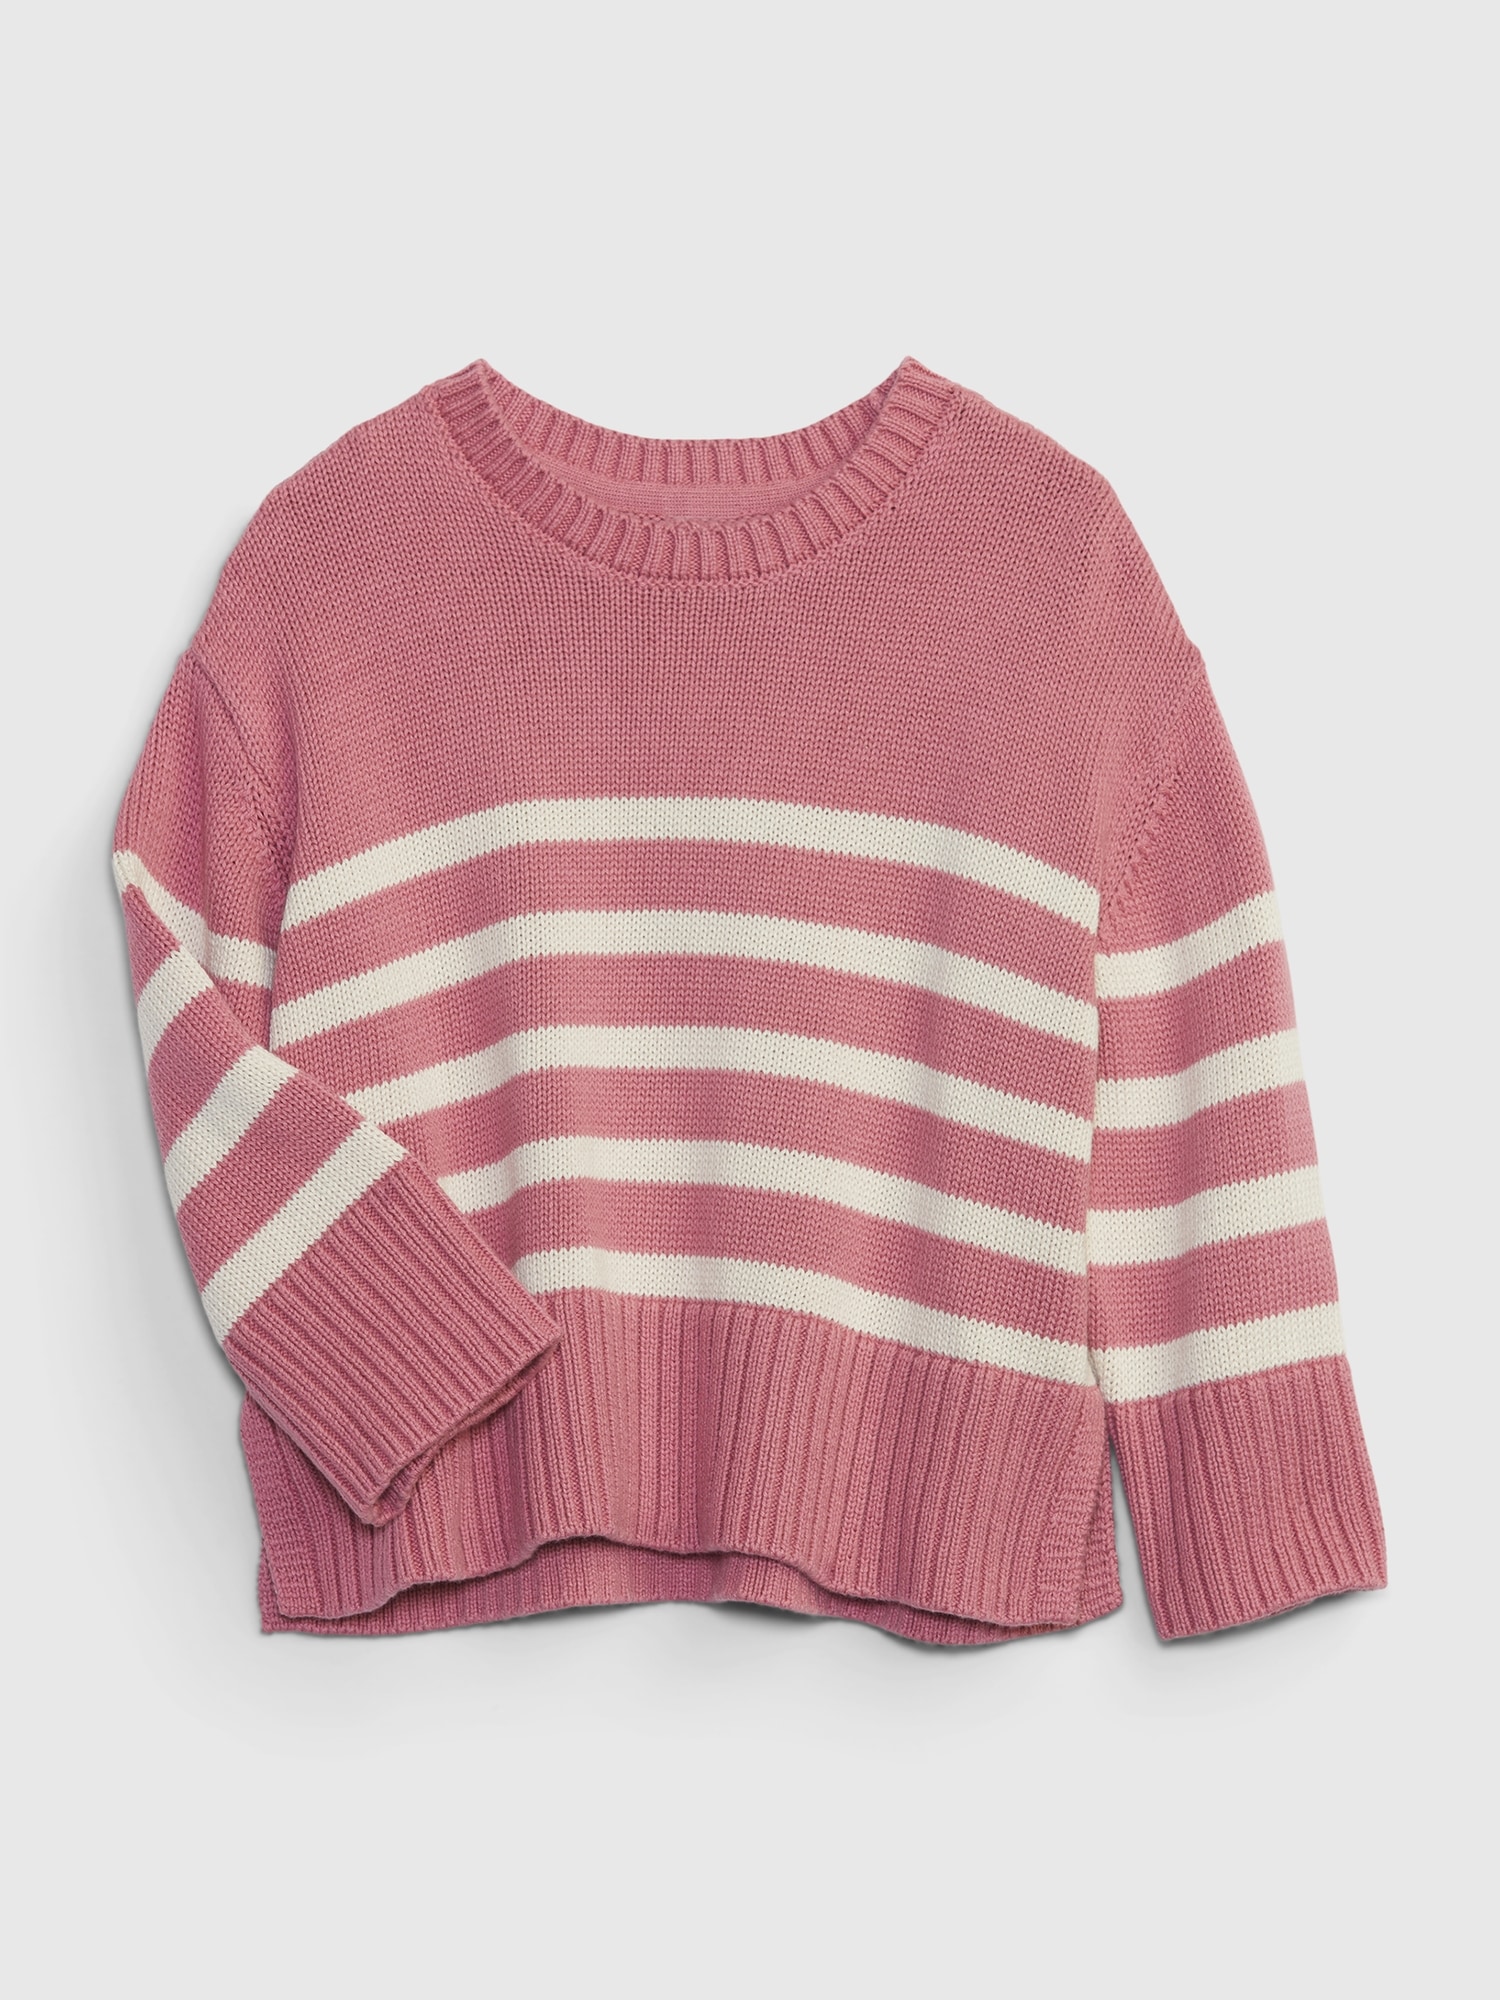 Gap Babies' Toddler Stripe Sweater In Rosetta Pink